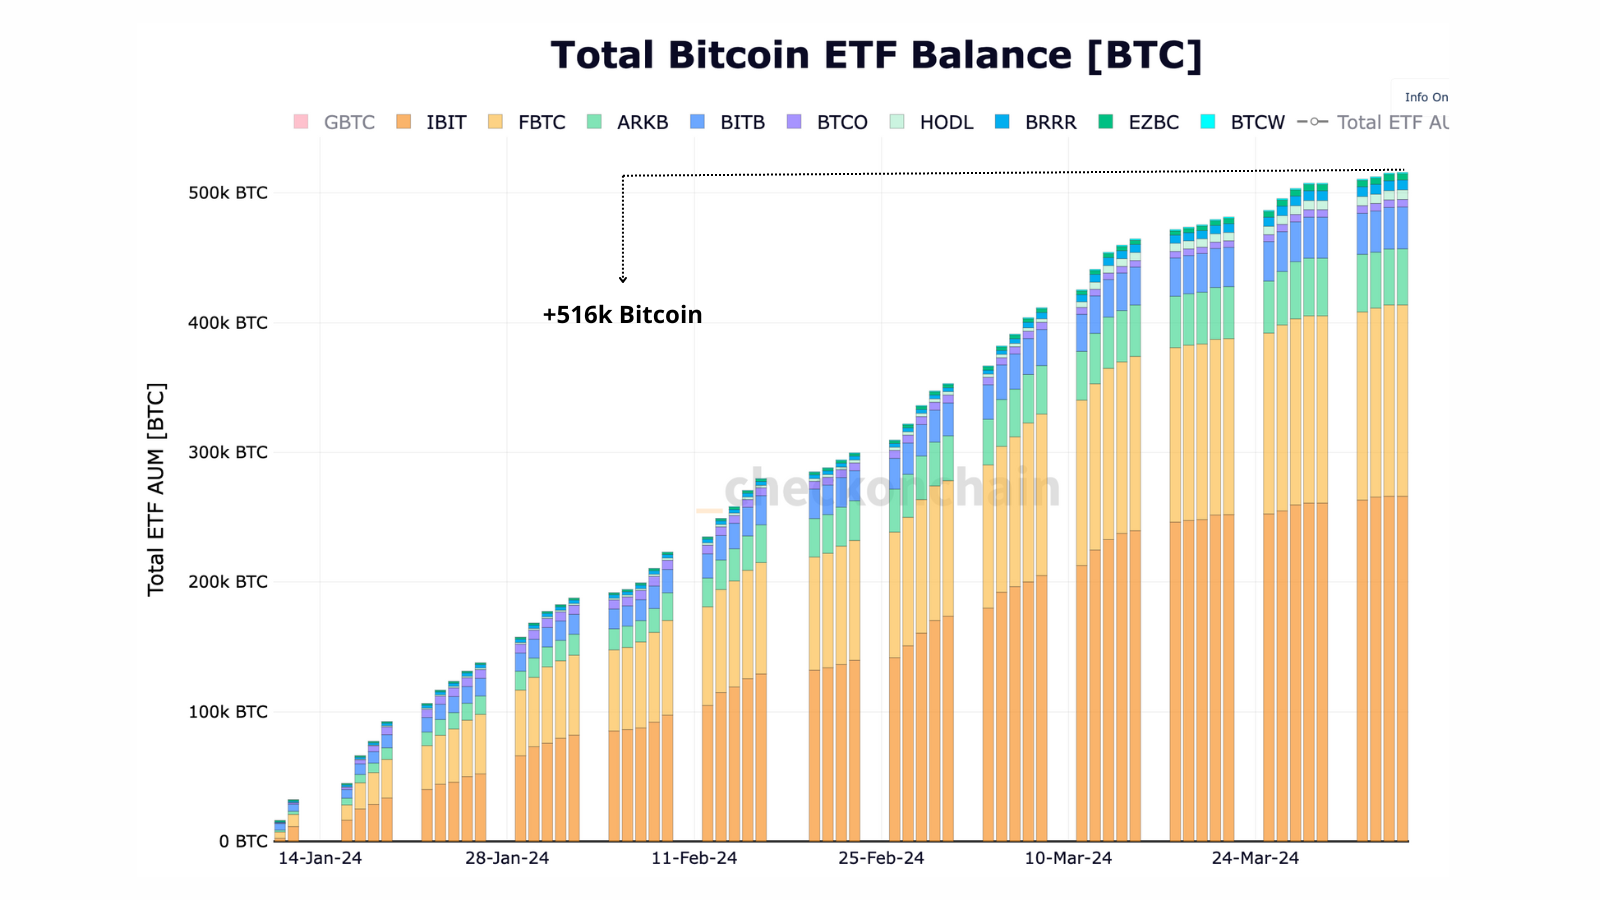 Le graphique représente la balance totale des bitcoins détenus par les ETF. Nous voyons que cette tendance ne fait qu'augmenter et que les ETF accumulent en masse du BTC.
Nous voyons également que IBIT (BlackRock) et FBTC (Fidelity) détiennent le plus de Bitcoin parmi les ETF. 